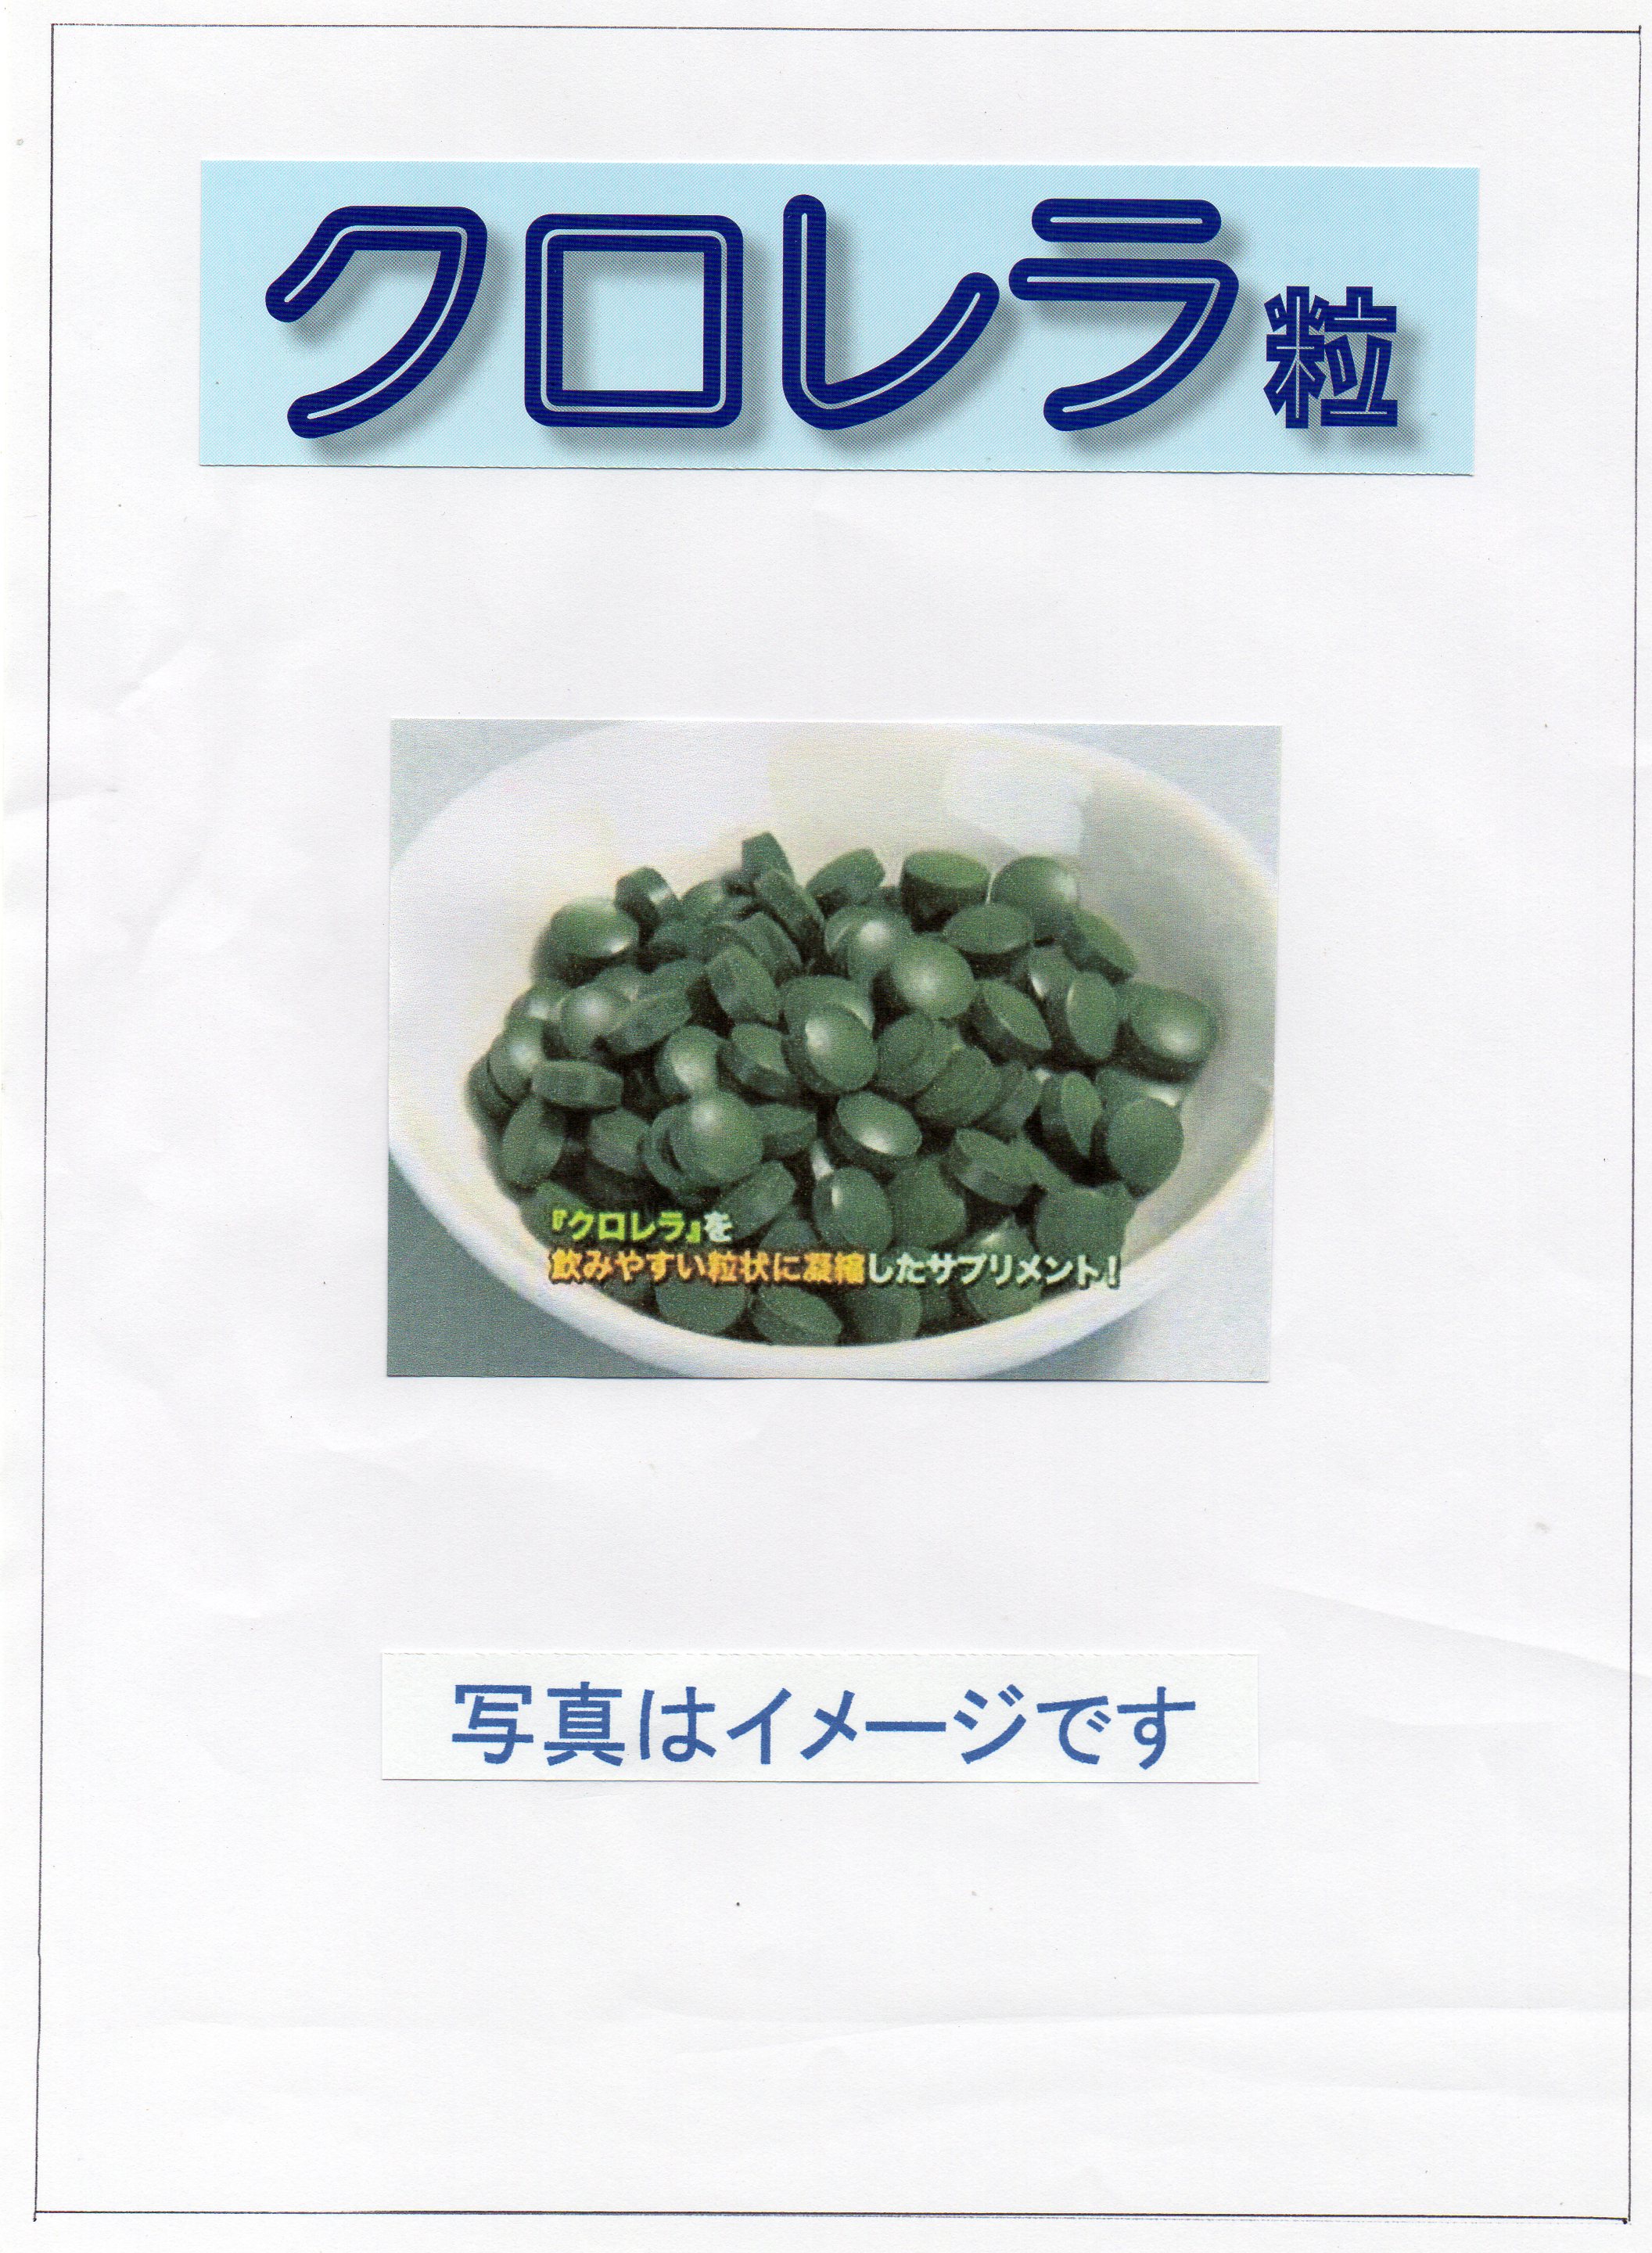 福井県 クロレラ 栄養補助食品 健康食品 クロレラエイト